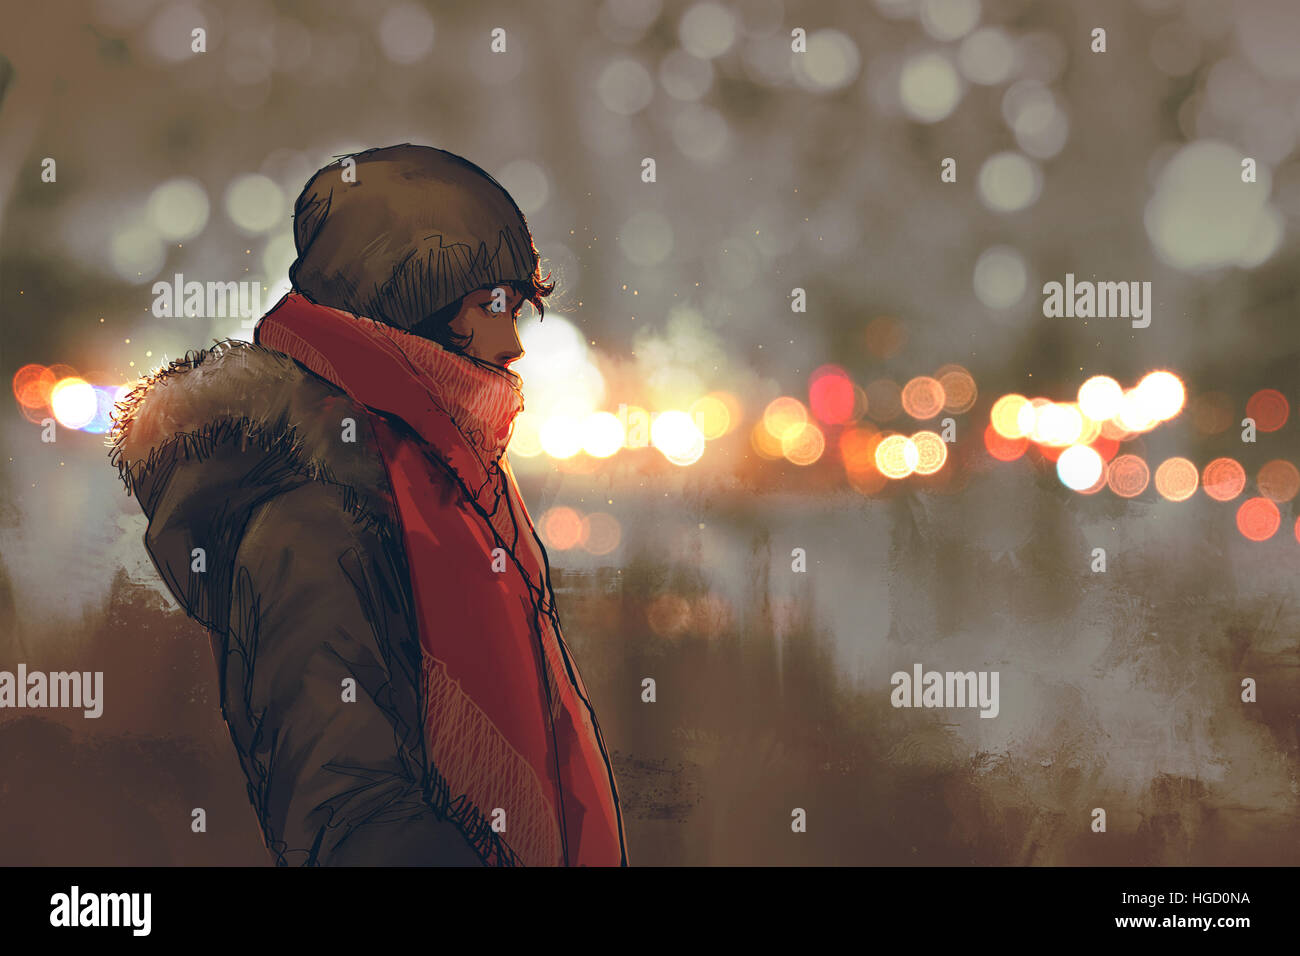 Outdoor Ritratto di giovane uomo in inverno con bokeh luce sullo sfondo, illustrazione pittura Foto Stock